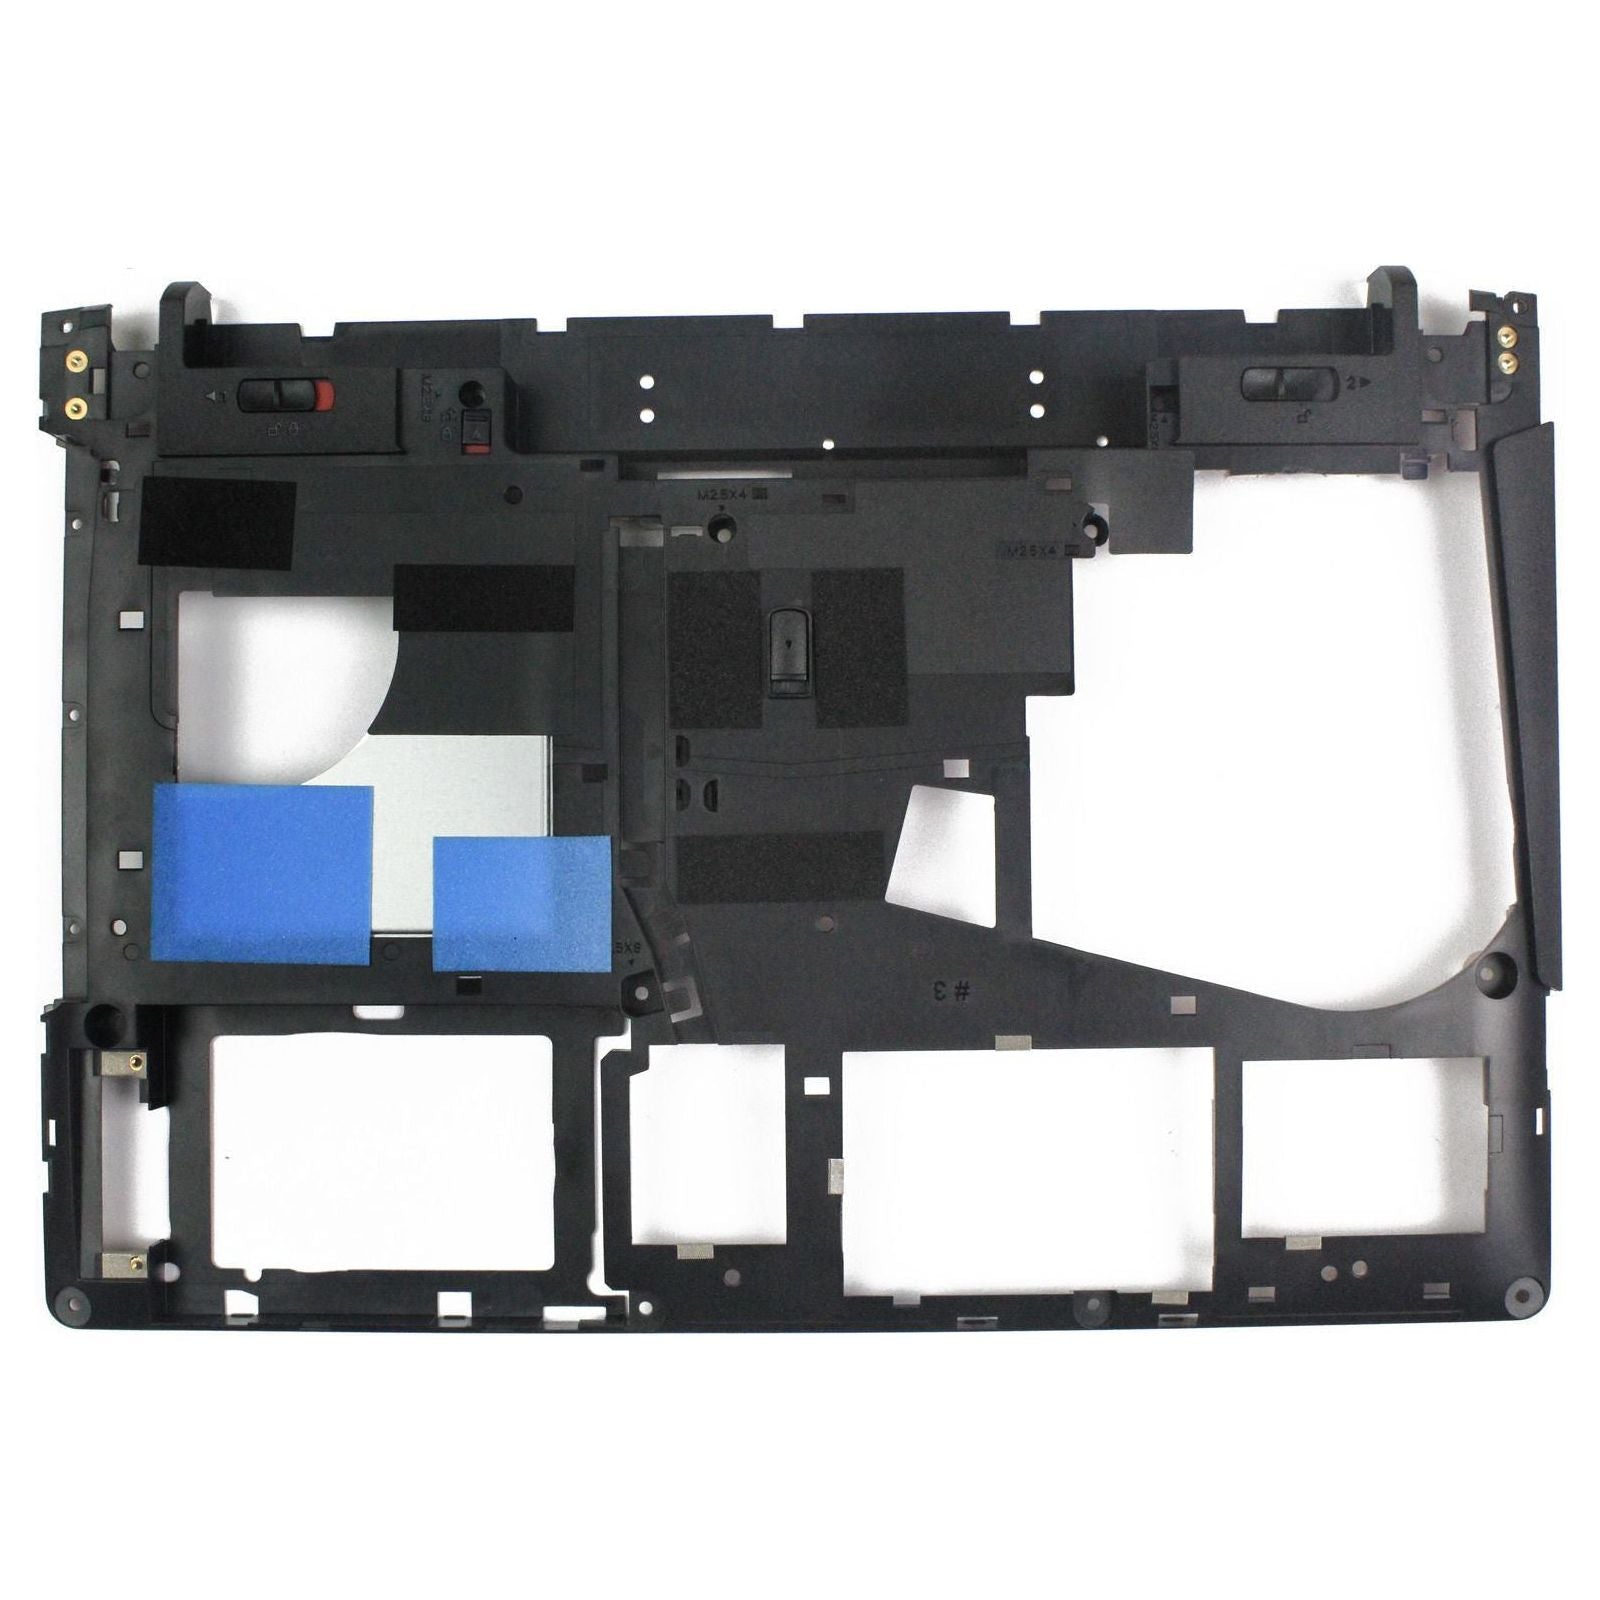 New Lenovo Ideapad Y400 Y410P Y410 Lower Case & Bottom Base Cover Door